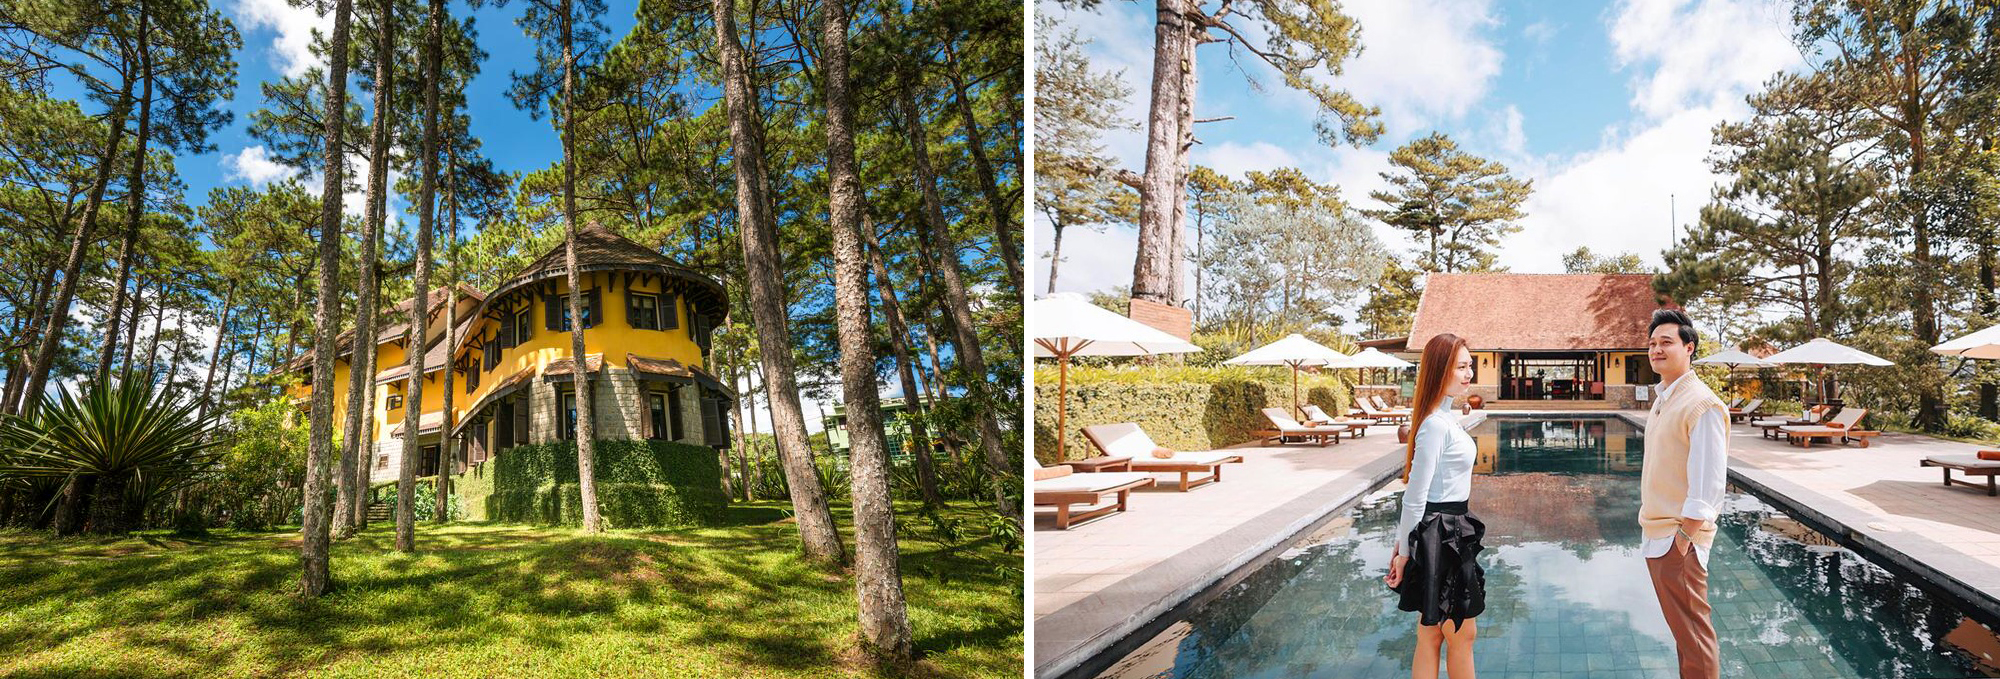 Cùng Savingbooking checkin 4 Resort Đà Lạt có hồ bơi view núi rừng thơ mộng